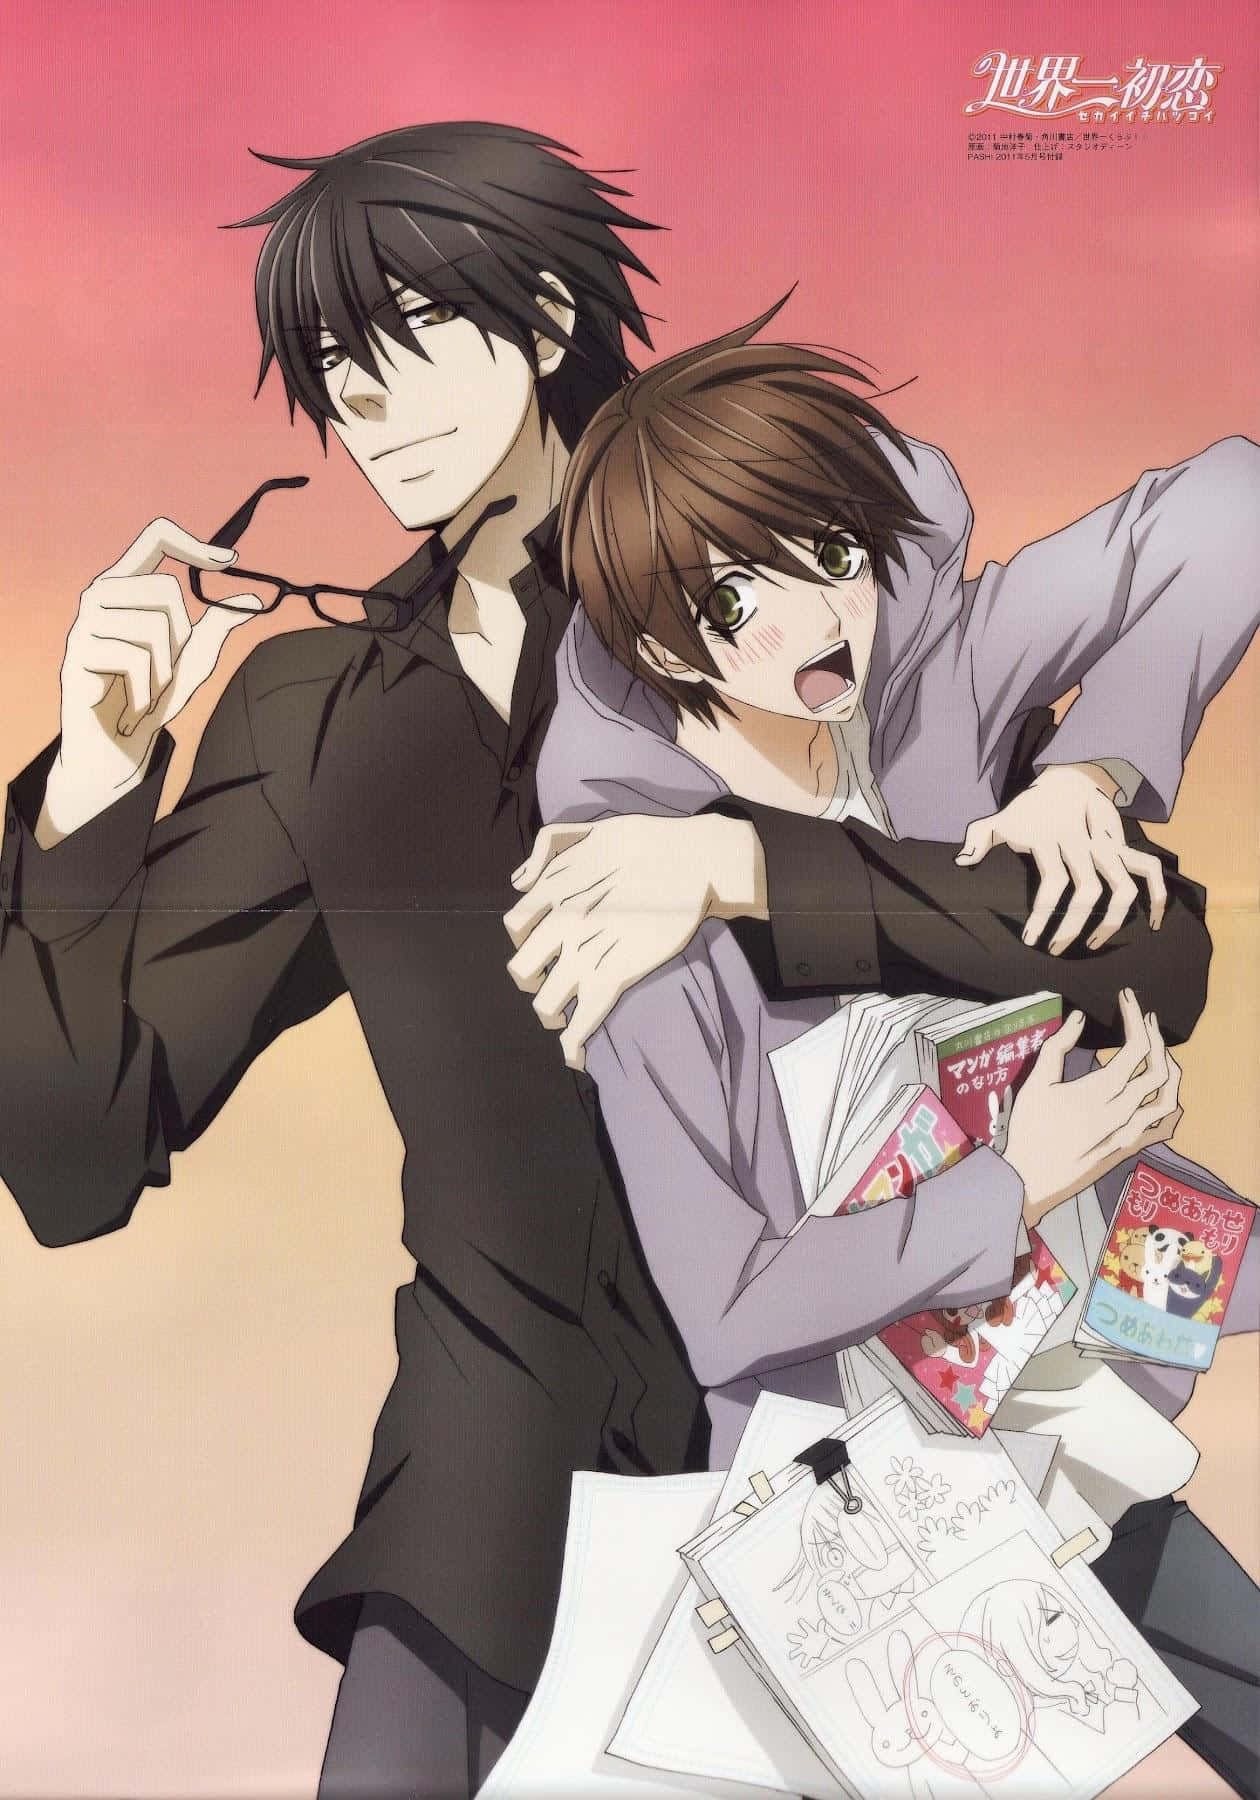 Nyd et hjerteligt øjeblik af kærlighed, disse to homoseksuelle anime-karakterer omfavner hinanden romantisk. Wallpaper